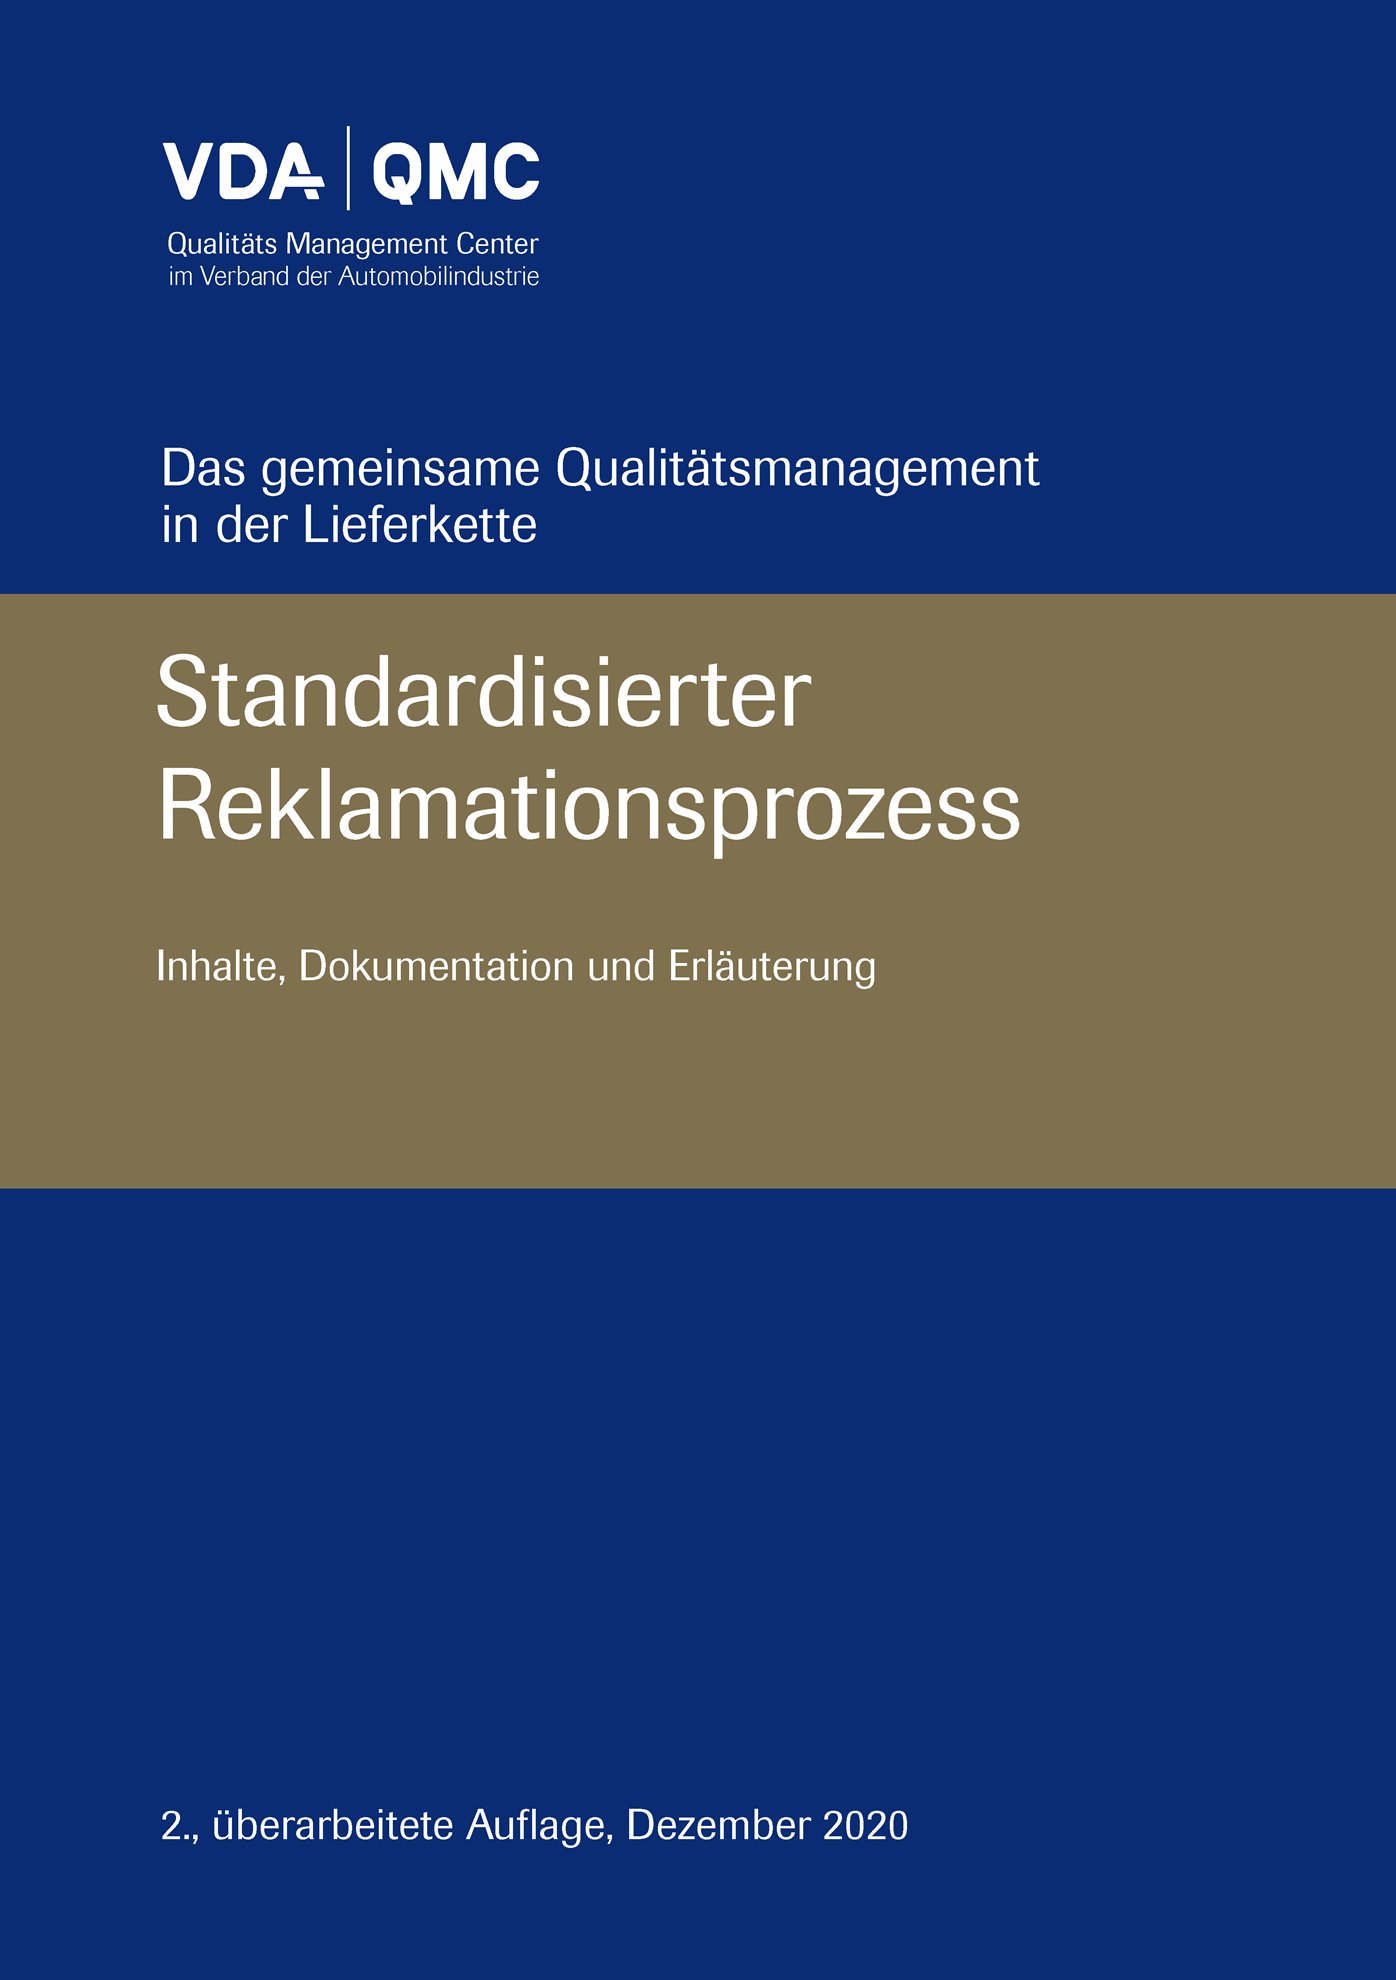 Náhľad  VDA Standardisierter Reklamationsprozess. Inhalte, Dokumentation und Erläuterung. 
 2., überarbeitete Auflage, Dezember 2020 1.12.2020